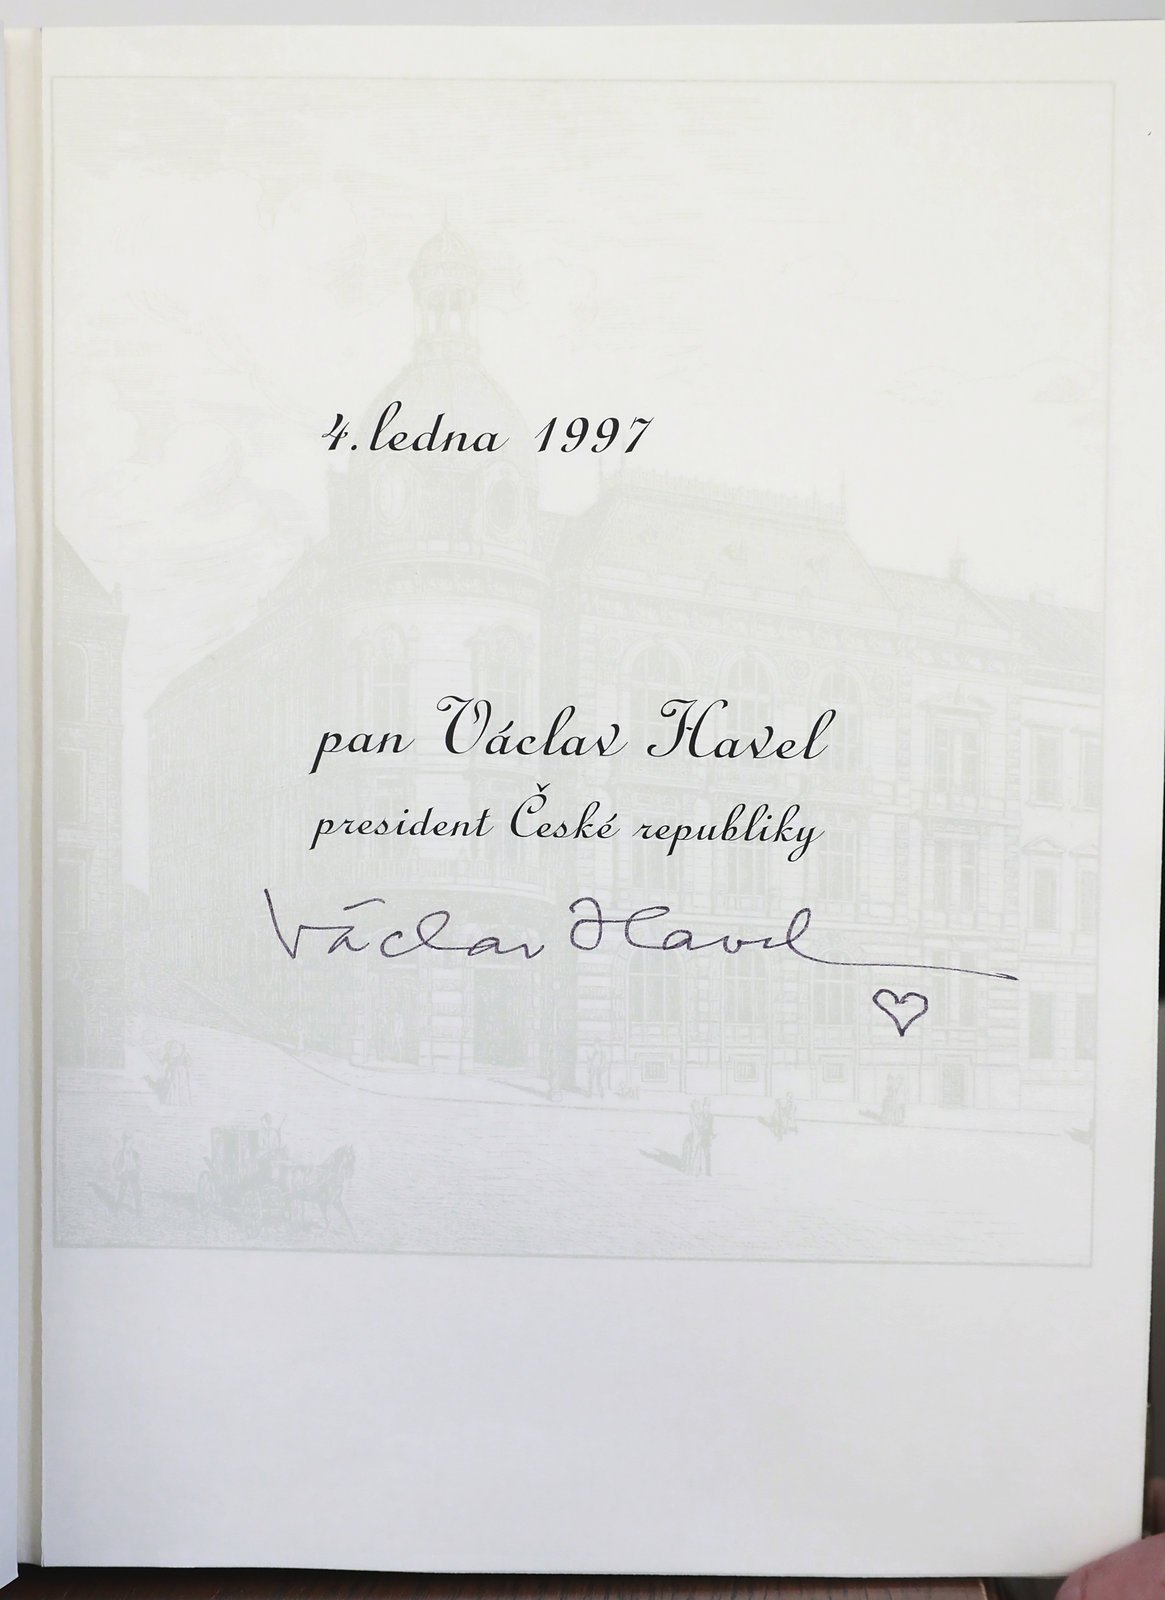 Podpis Václava Havla